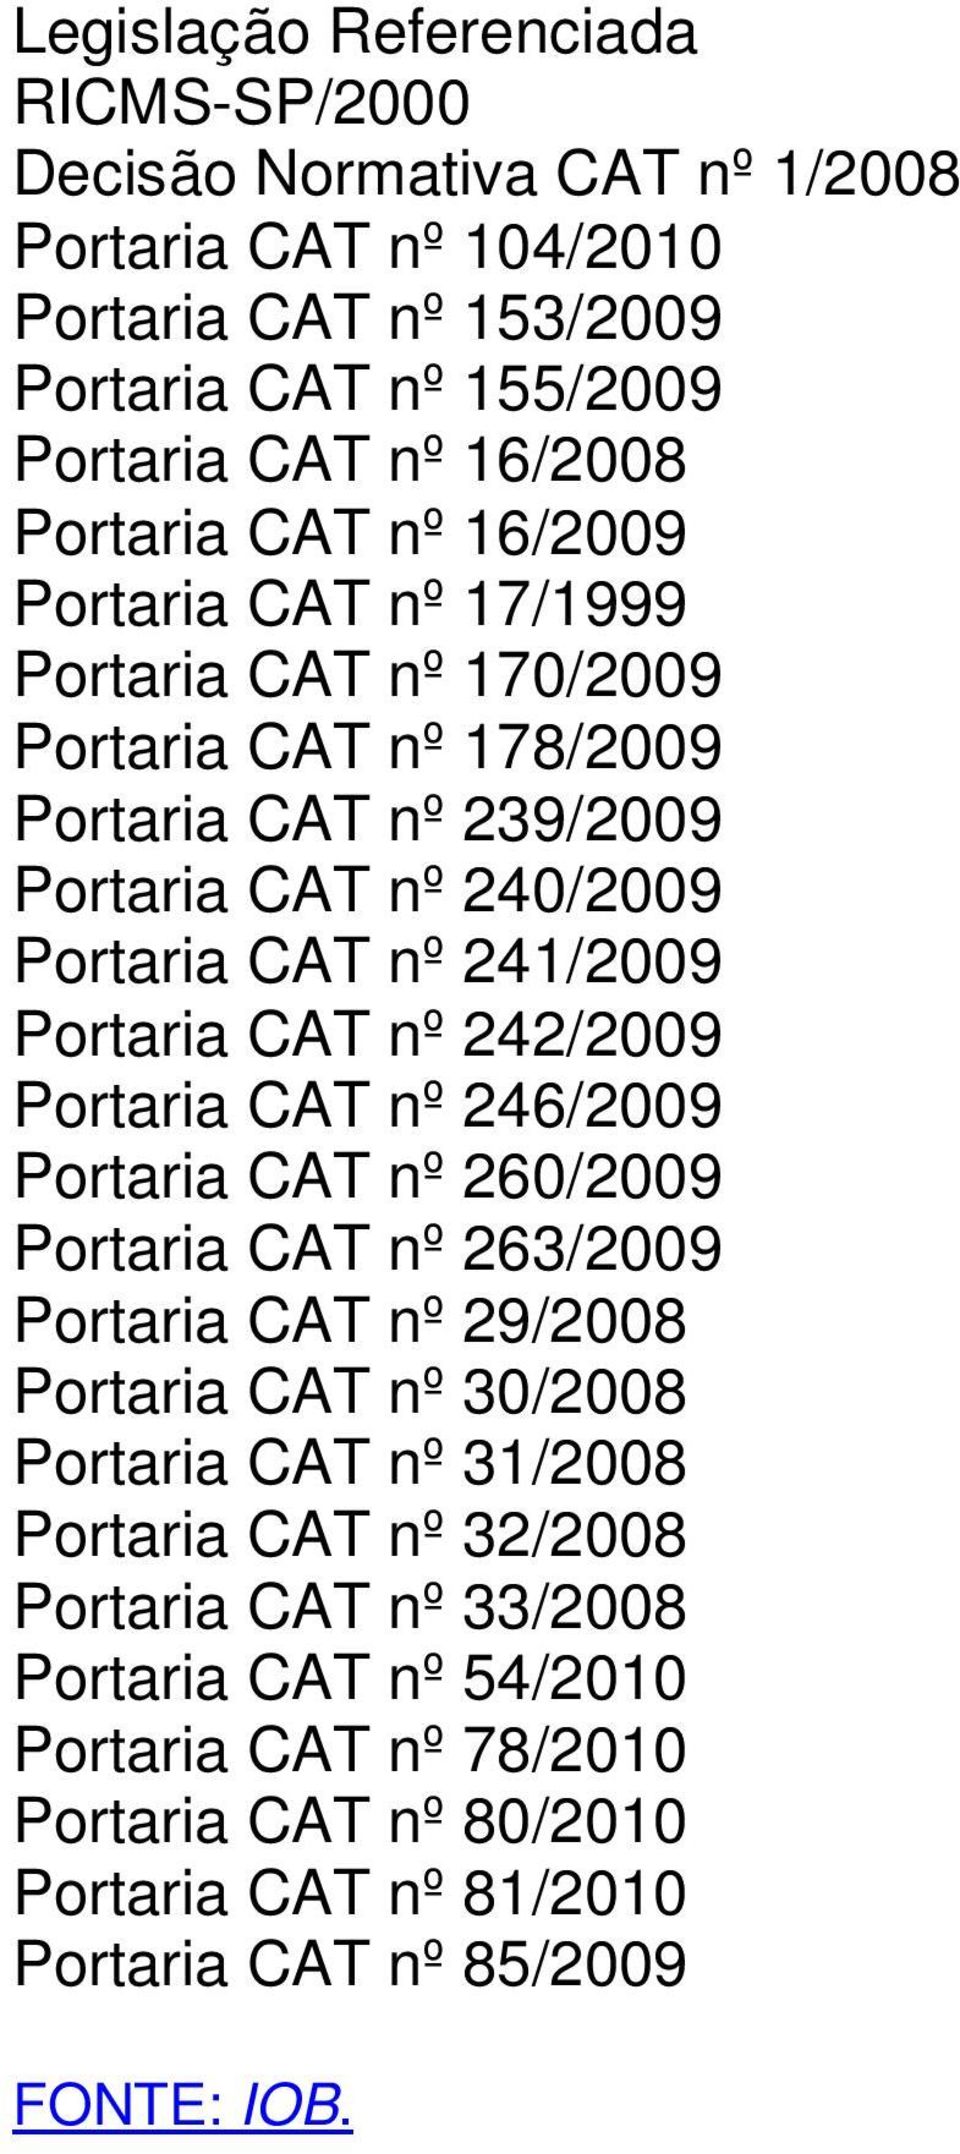 Portaria CAT nº 242/2009 Portaria CAT nº 246/2009 Portaria CAT nº 260/2009 Portaria CAT nº 263/2009 Portaria CAT nº 29/2008 Portaria CAT nº 30/2008 Portaria CAT nº 31/2008